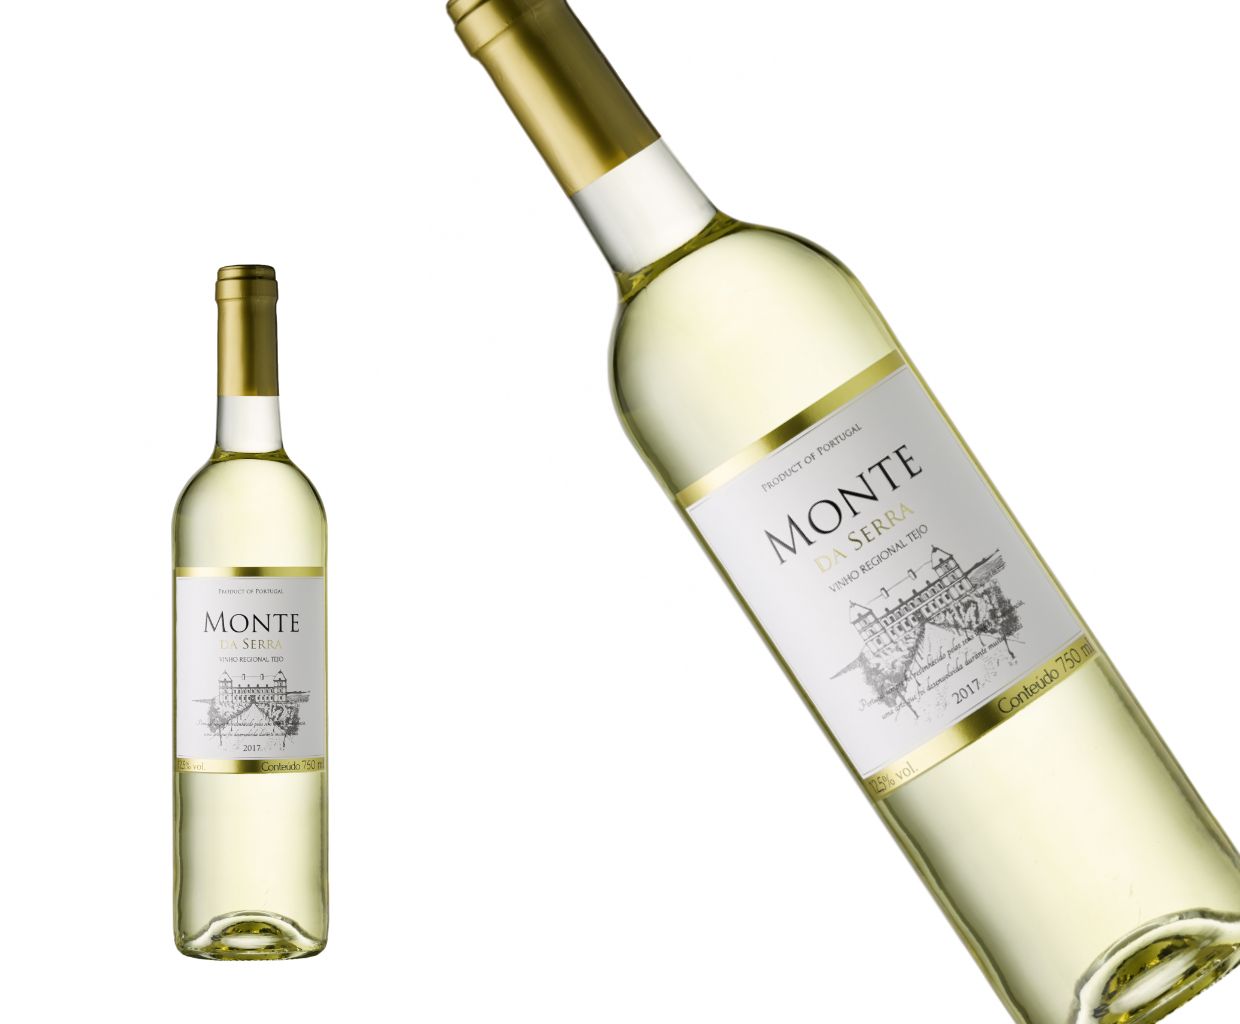 Monte Da Serra - Tanie, Białe, Portugalskie Wino z Biedronki